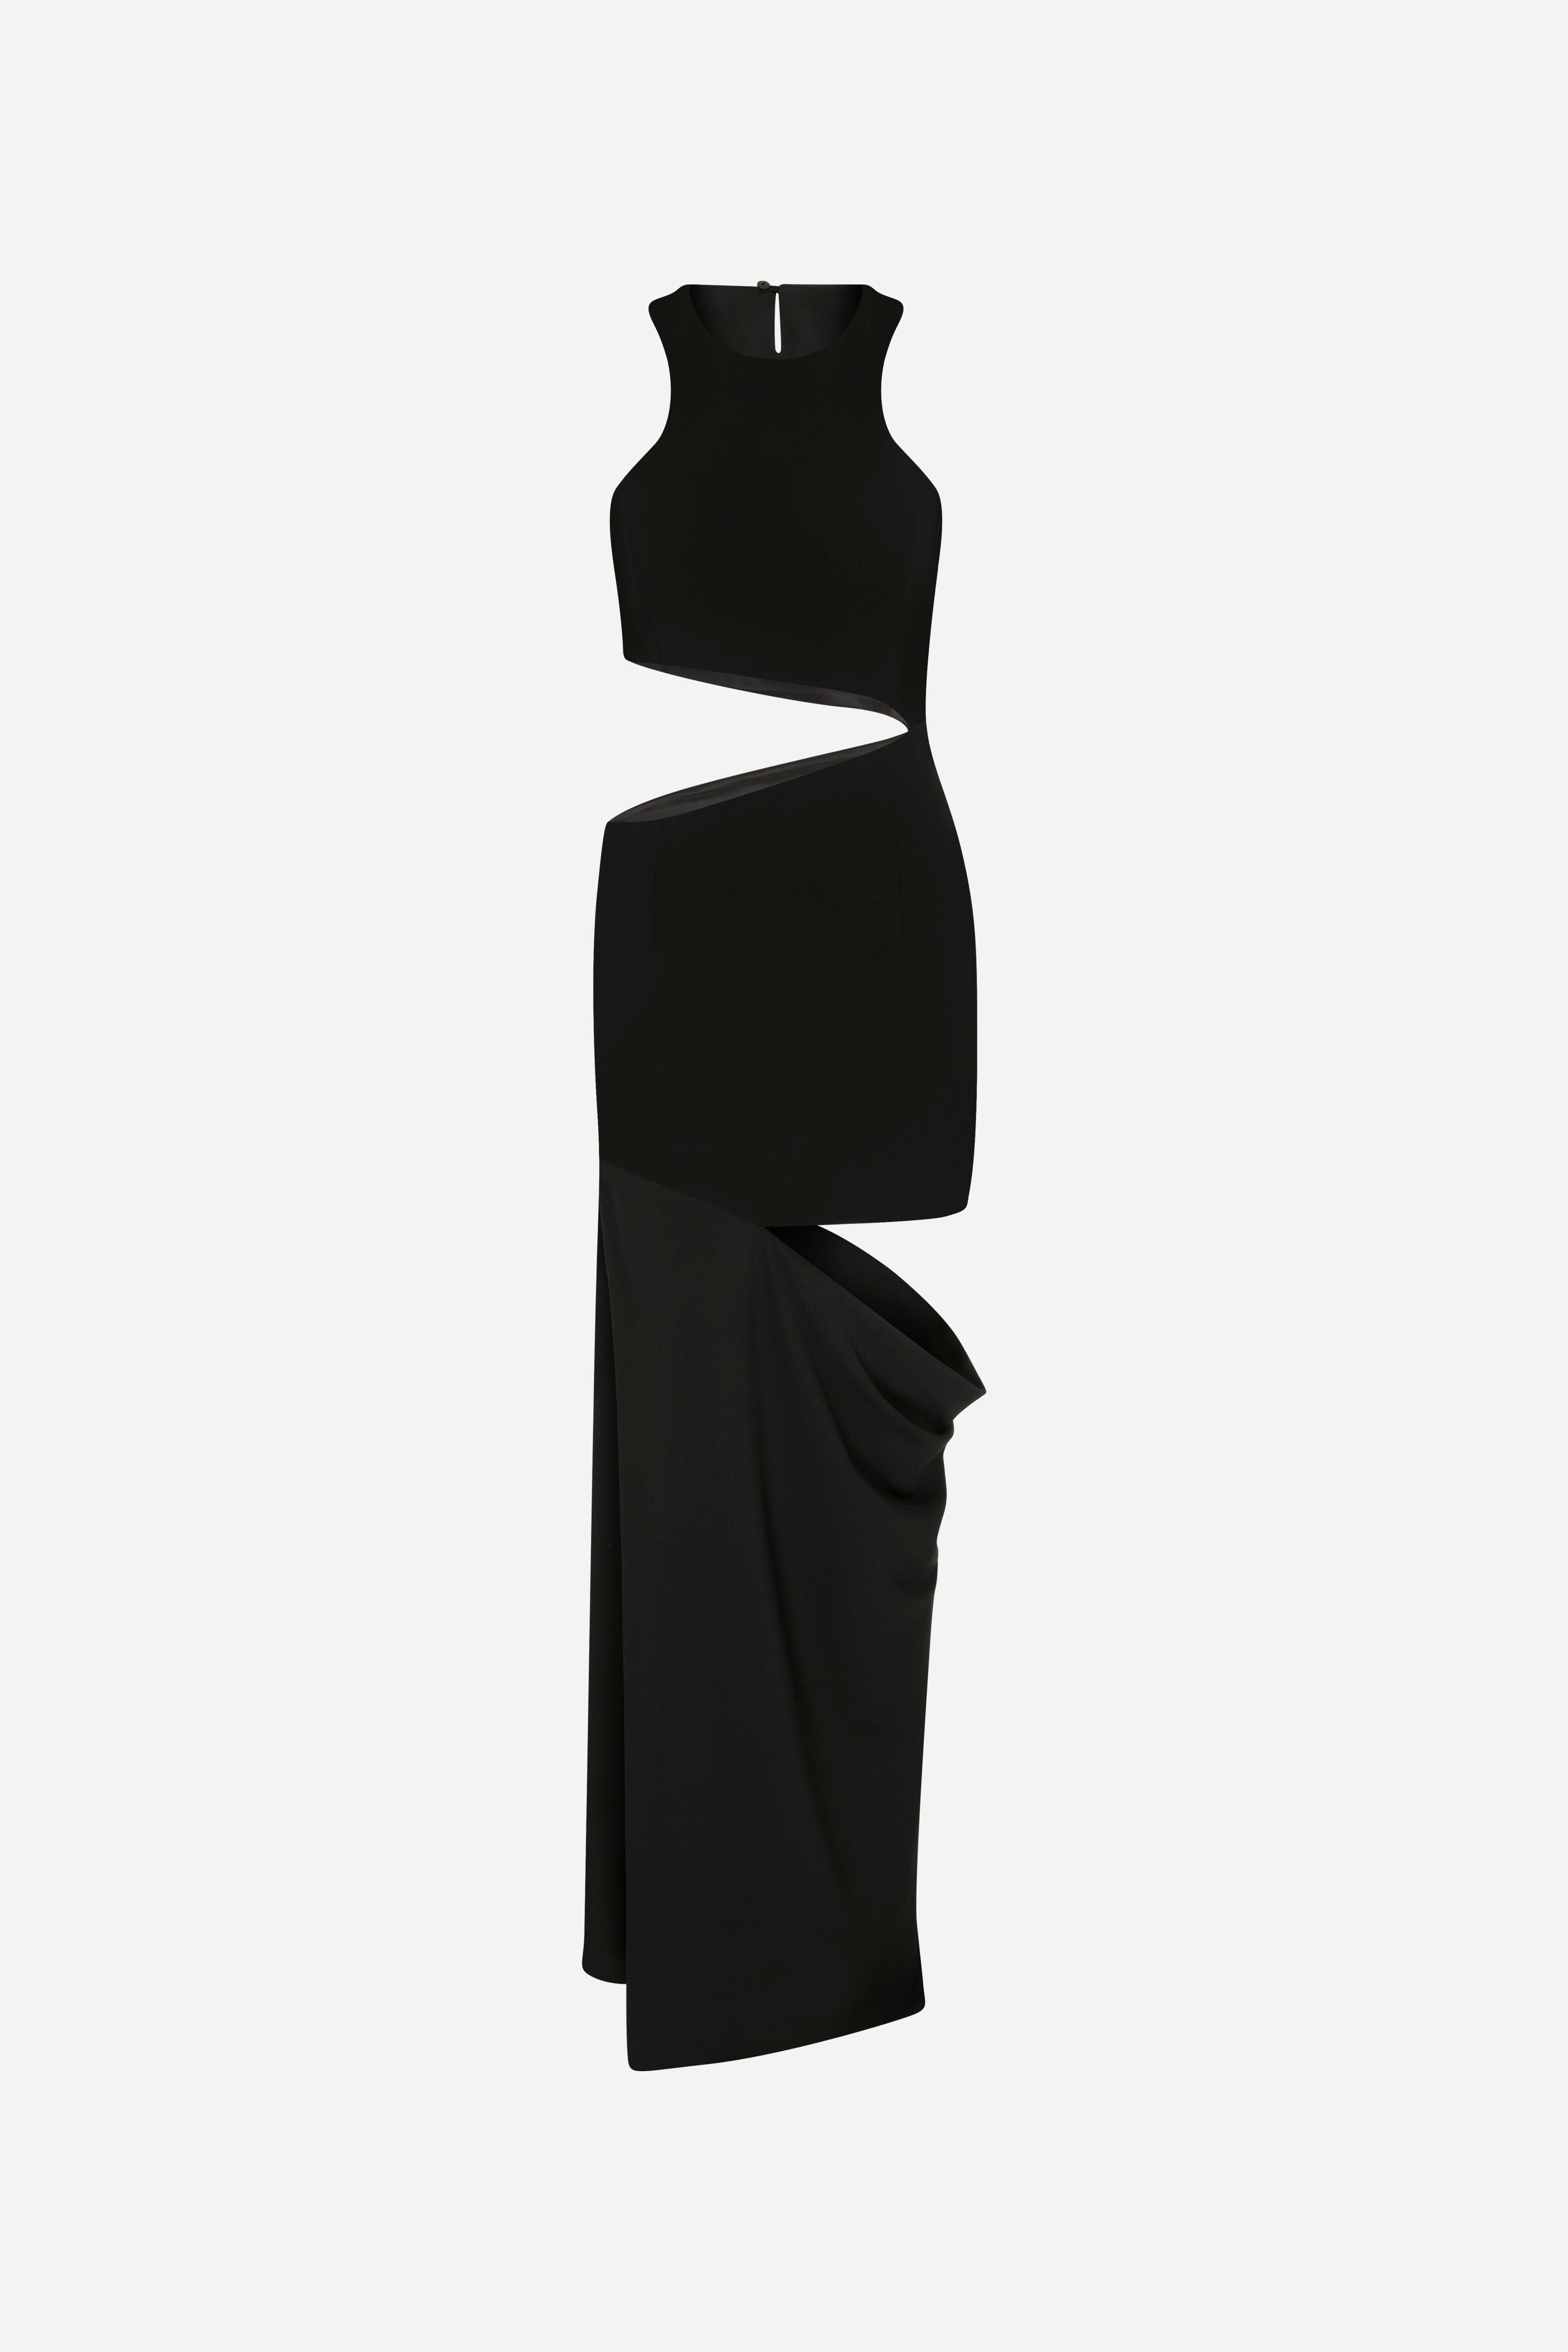 Zoya - Semi Sheer Dress With Cutout Details